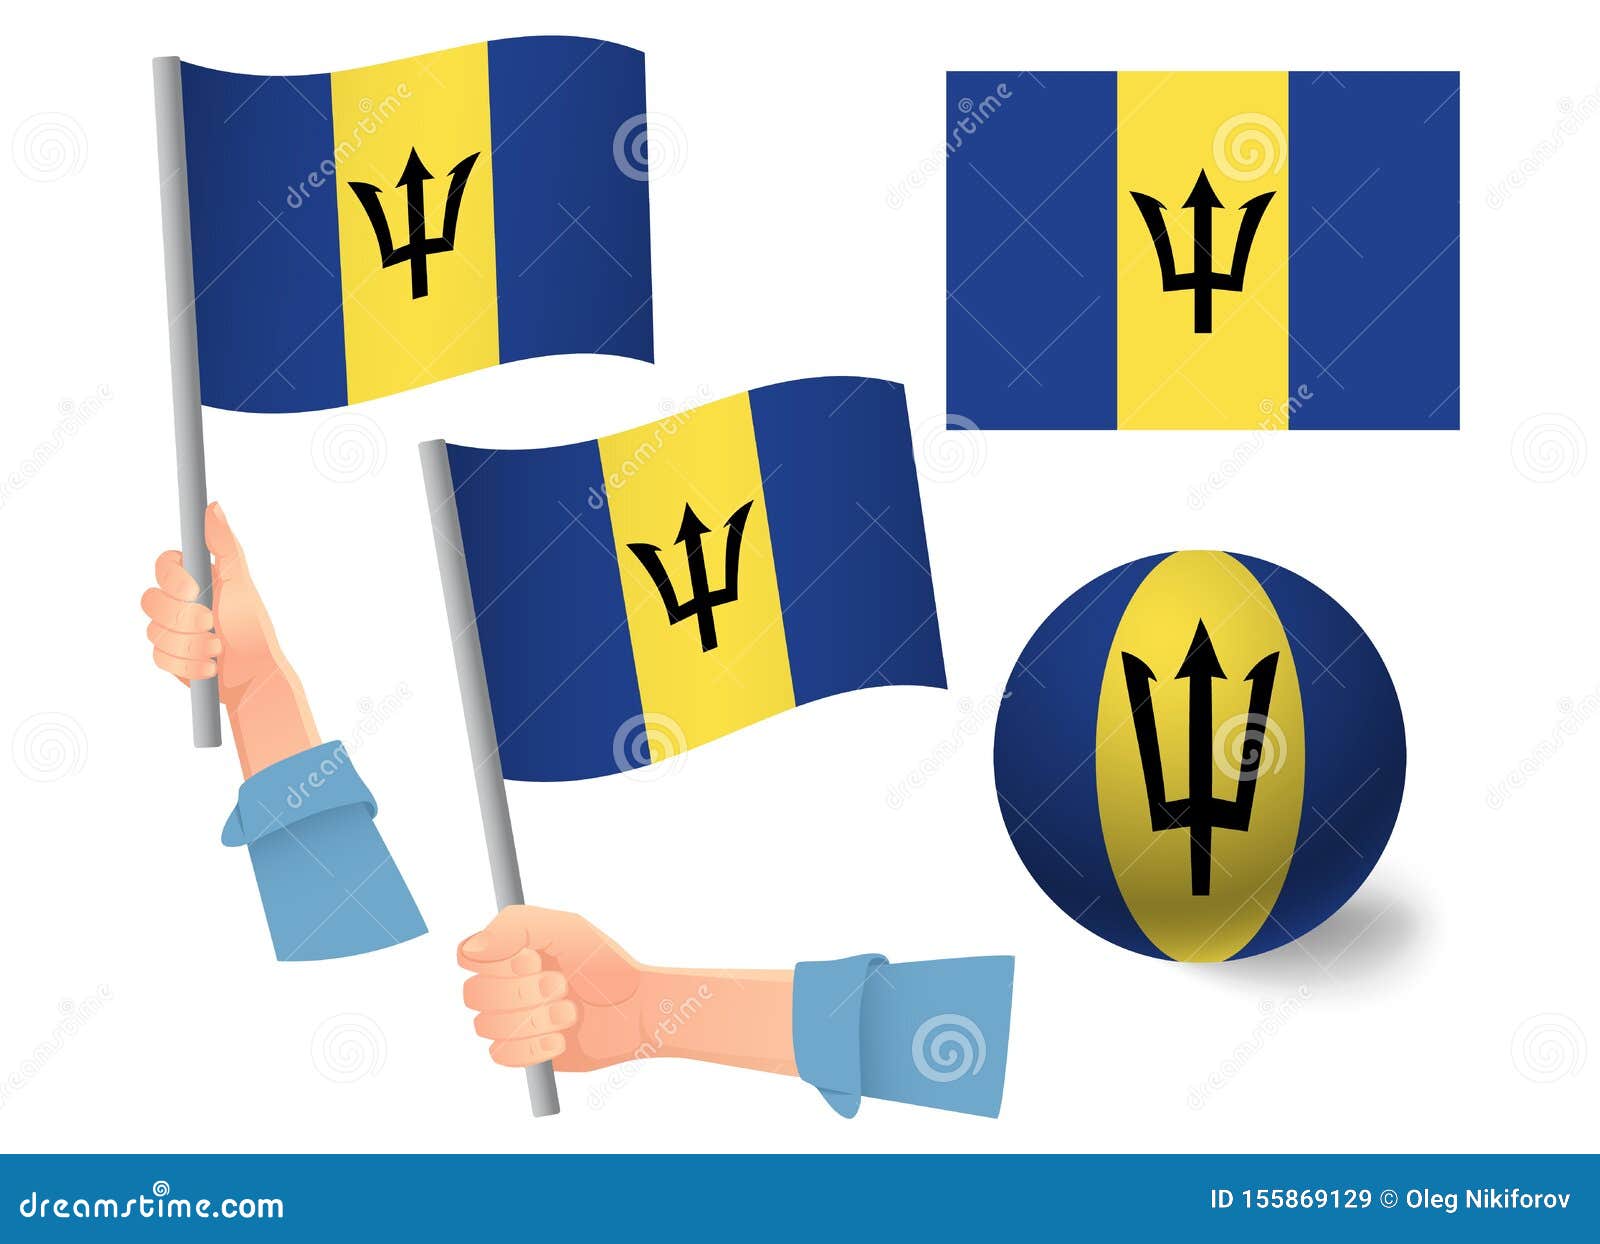 Icono De La Bandera De Barbados En La Mano Stock De Ilustraci N